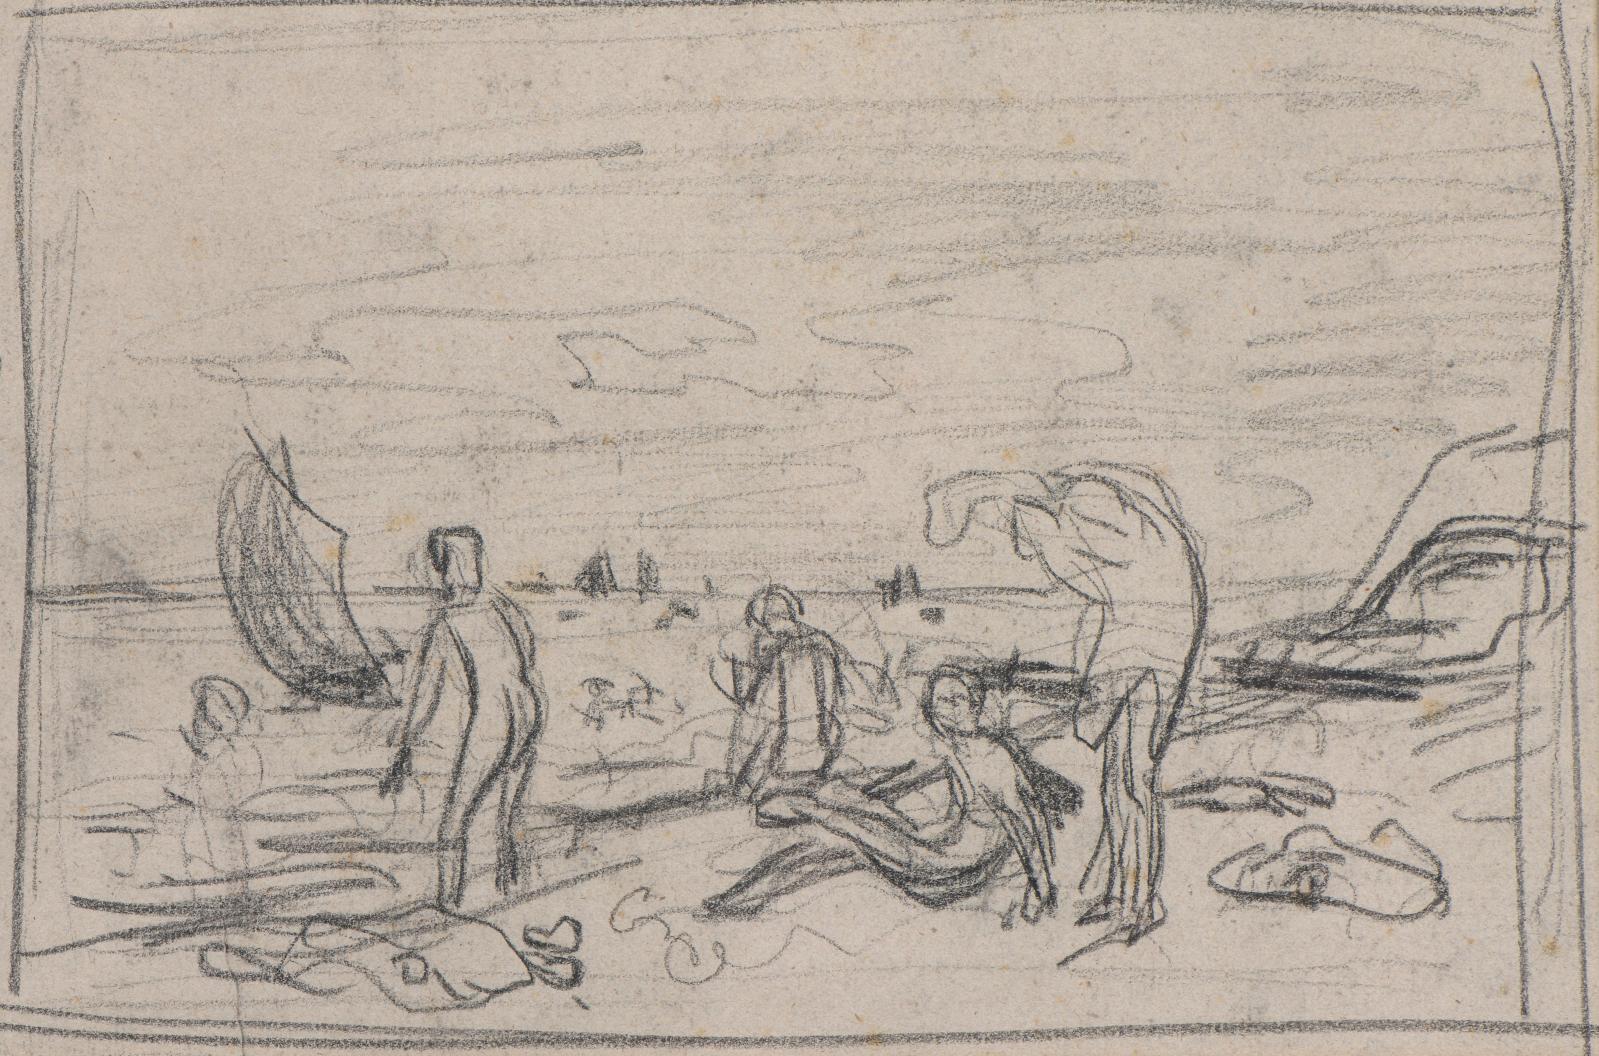 Frédéric Bazille (1841-1870), Baigneurs sur une plage, 1864 ou 1869, crayon noir, traits d’encadrement, 17 x 26 cm. Estimation : 20 000/30